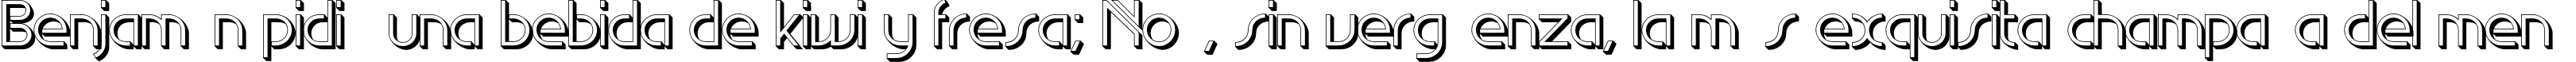 Пример написания шрифтом EdgeLineShadow текста на испанском